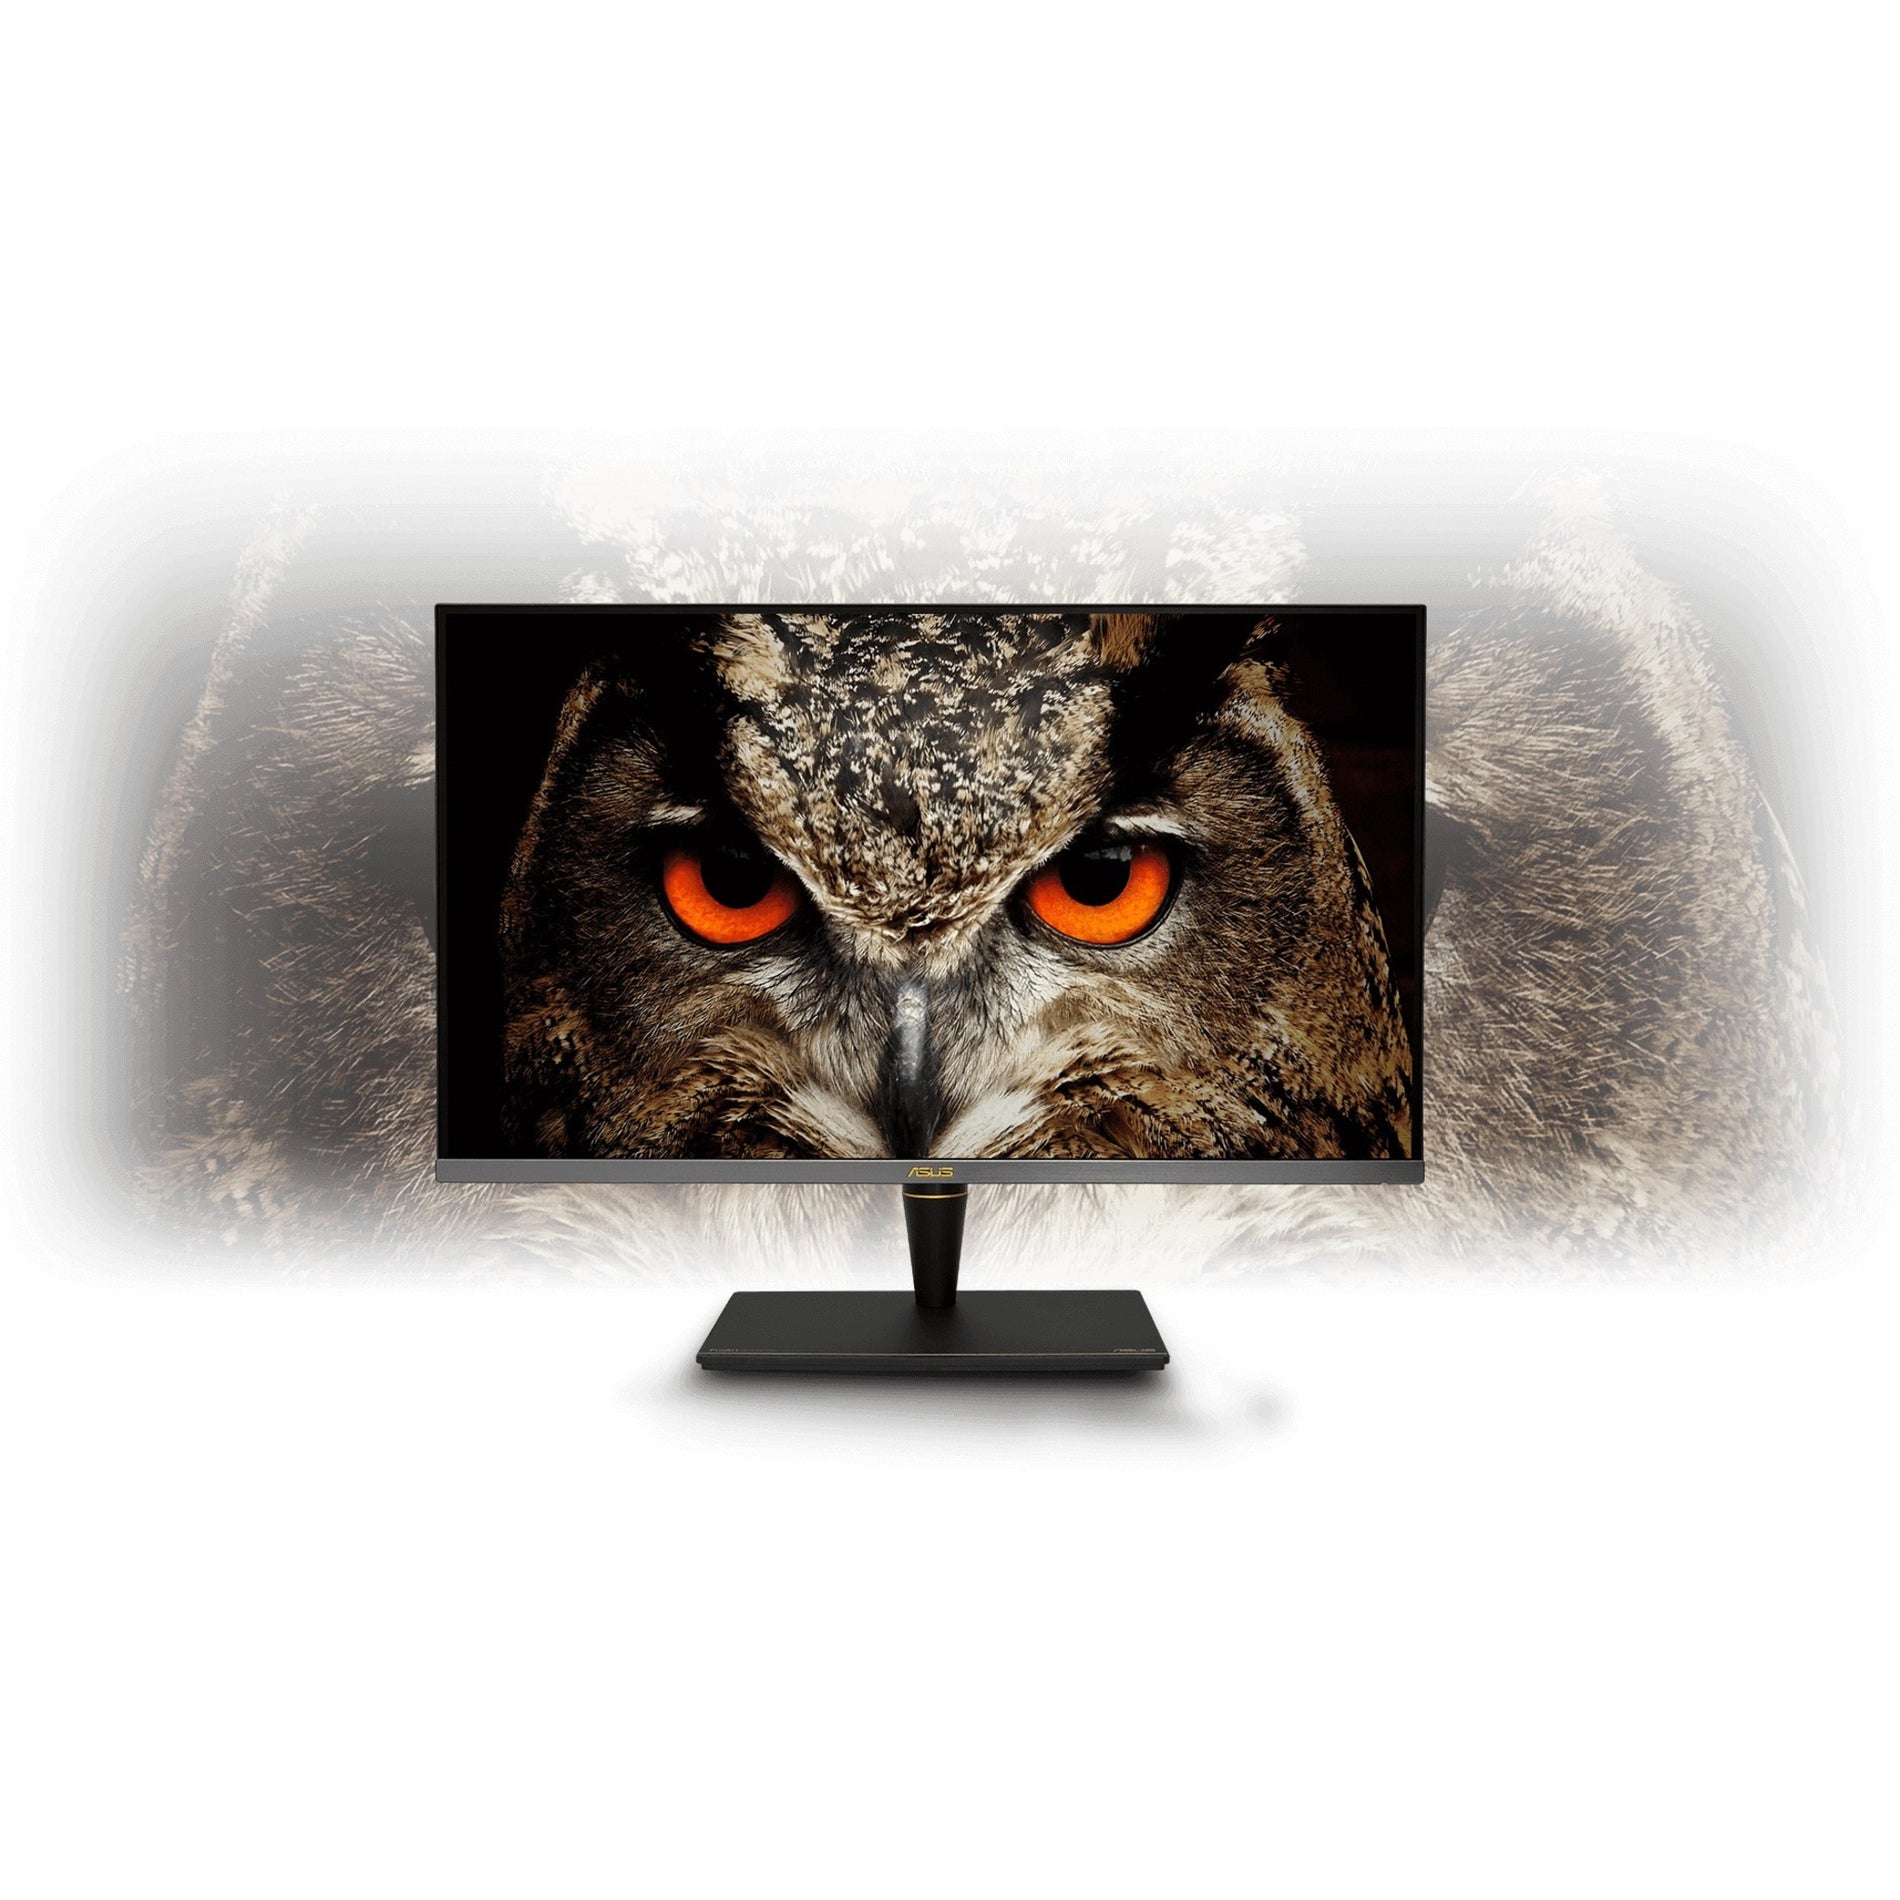 Asus PA32UCX-PK ProArt 32" 4K UHD LCD Monitor, 1200 Nit Brightness, 100% sRGB, USB Hub